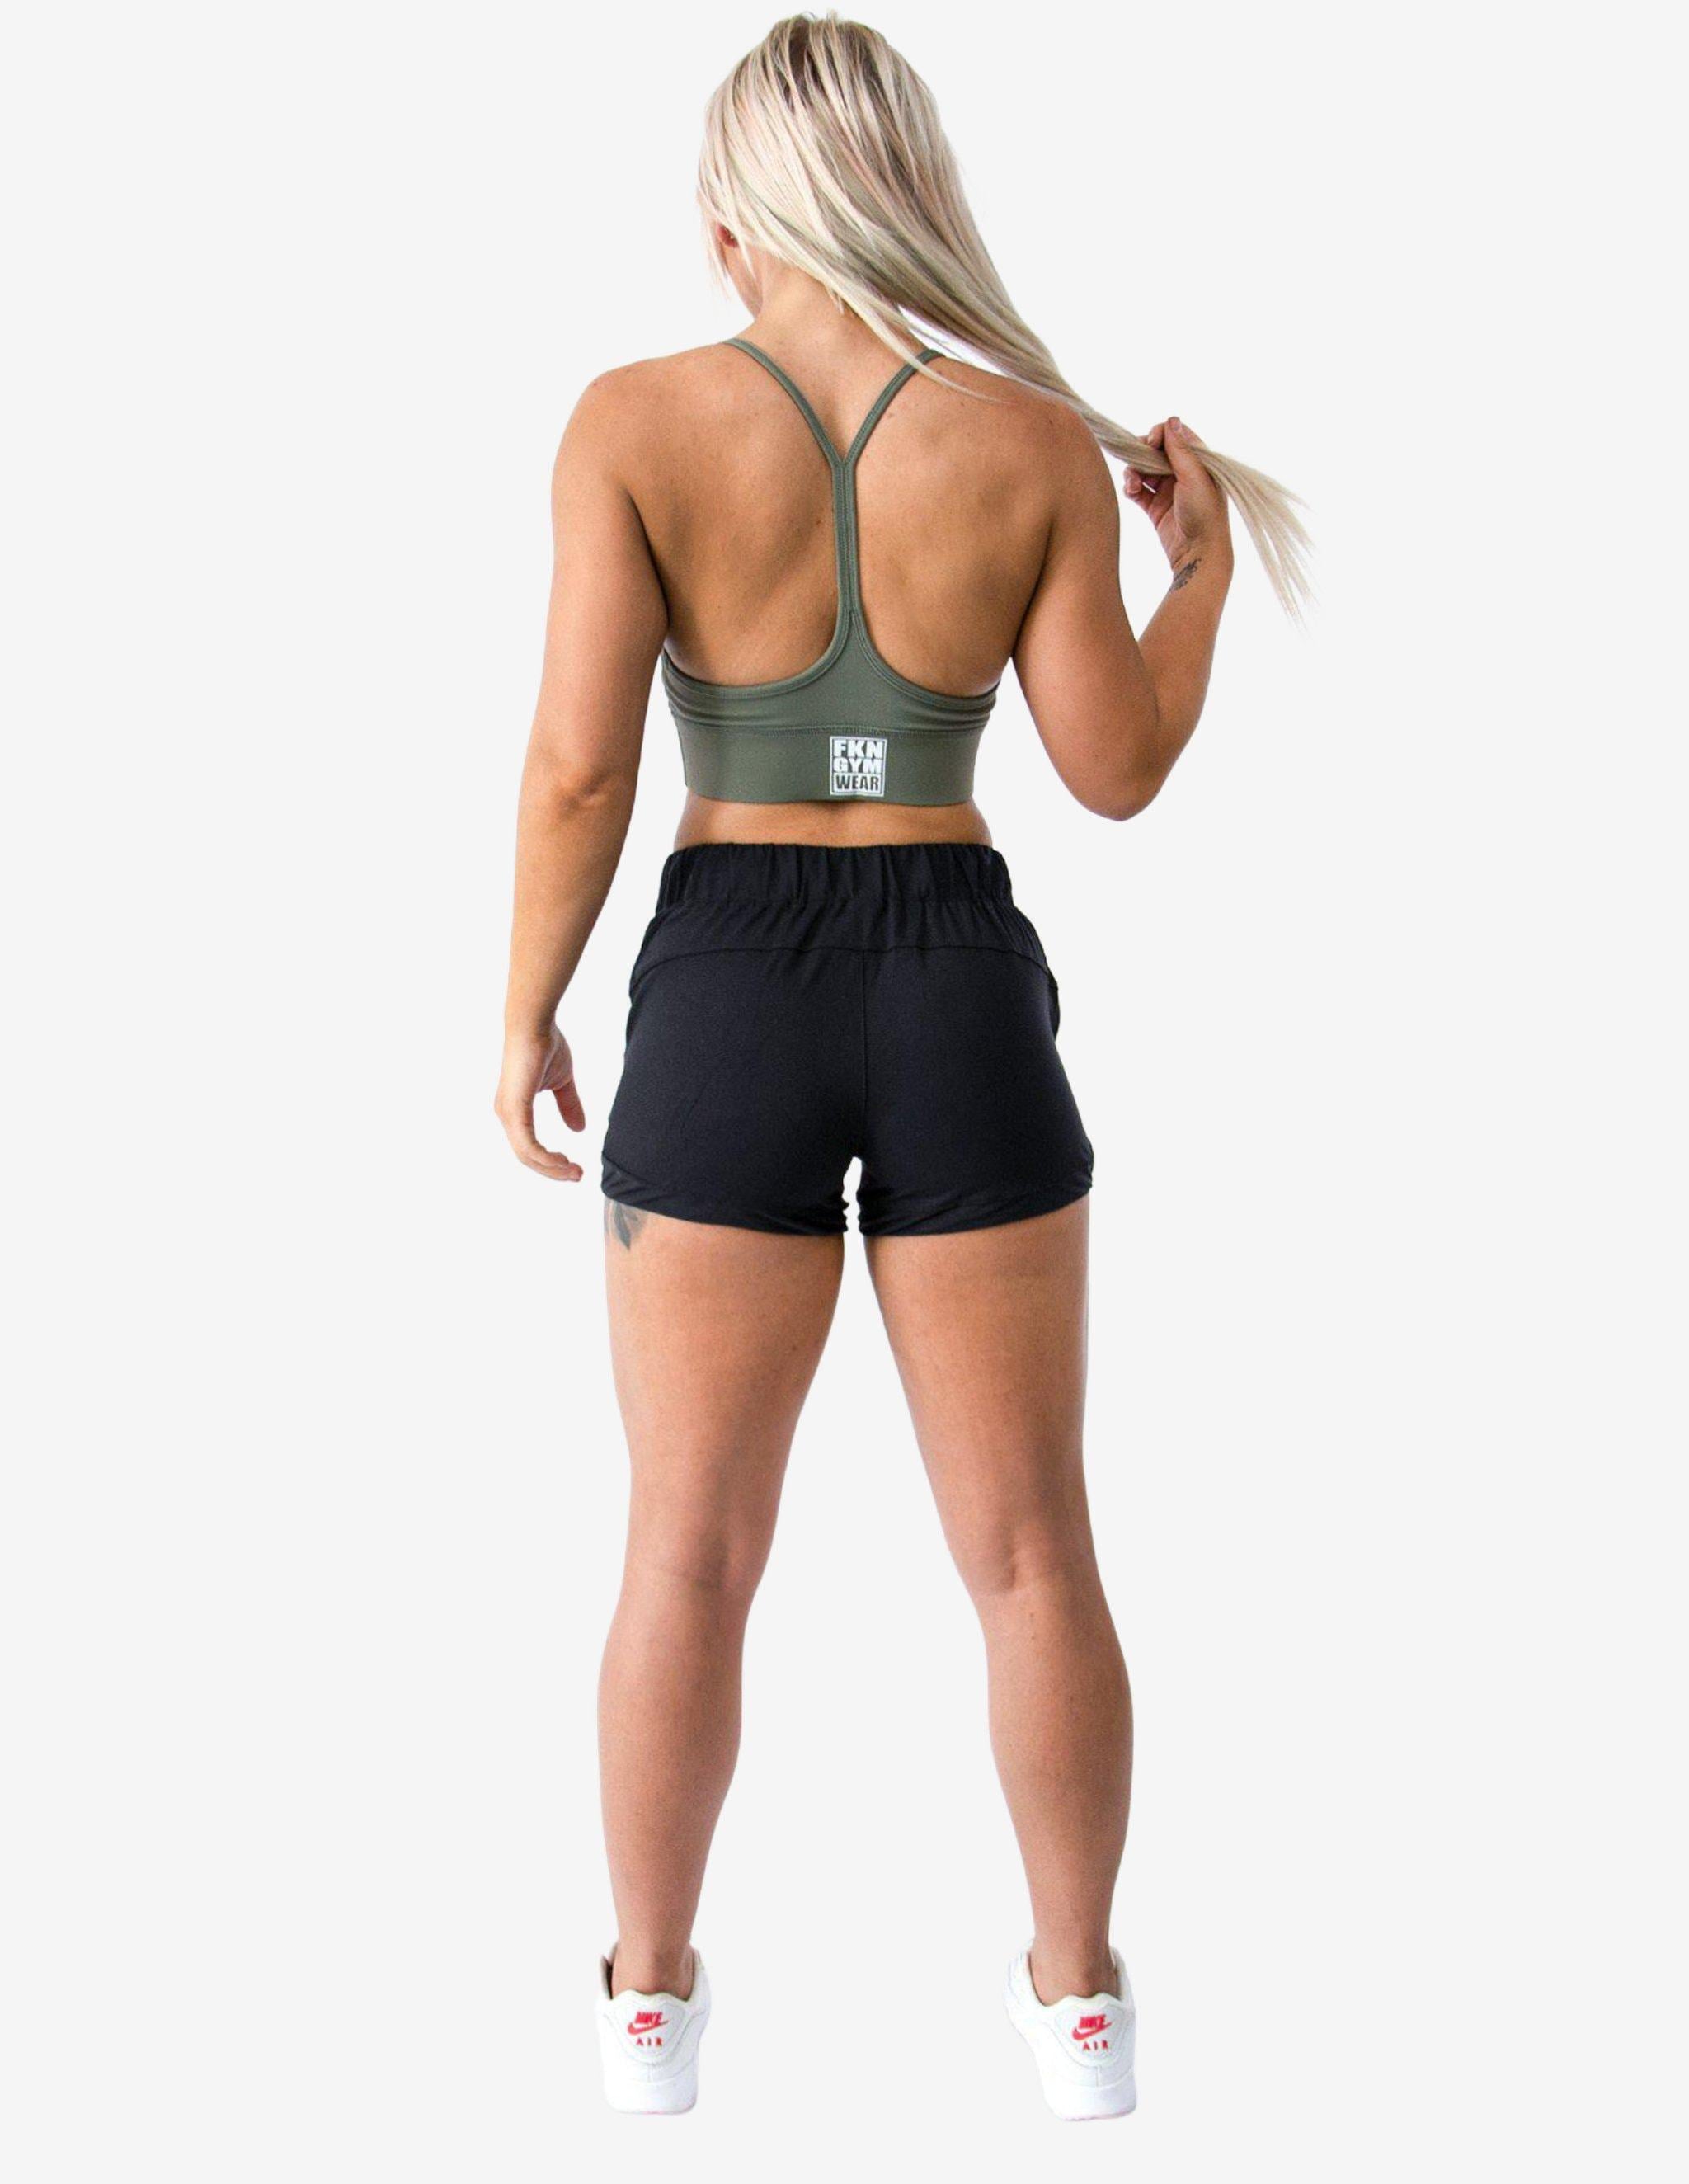 FKN Pro-Fit Shorts-Shorts Woman-FKN Gym Wear-Guru Muscle